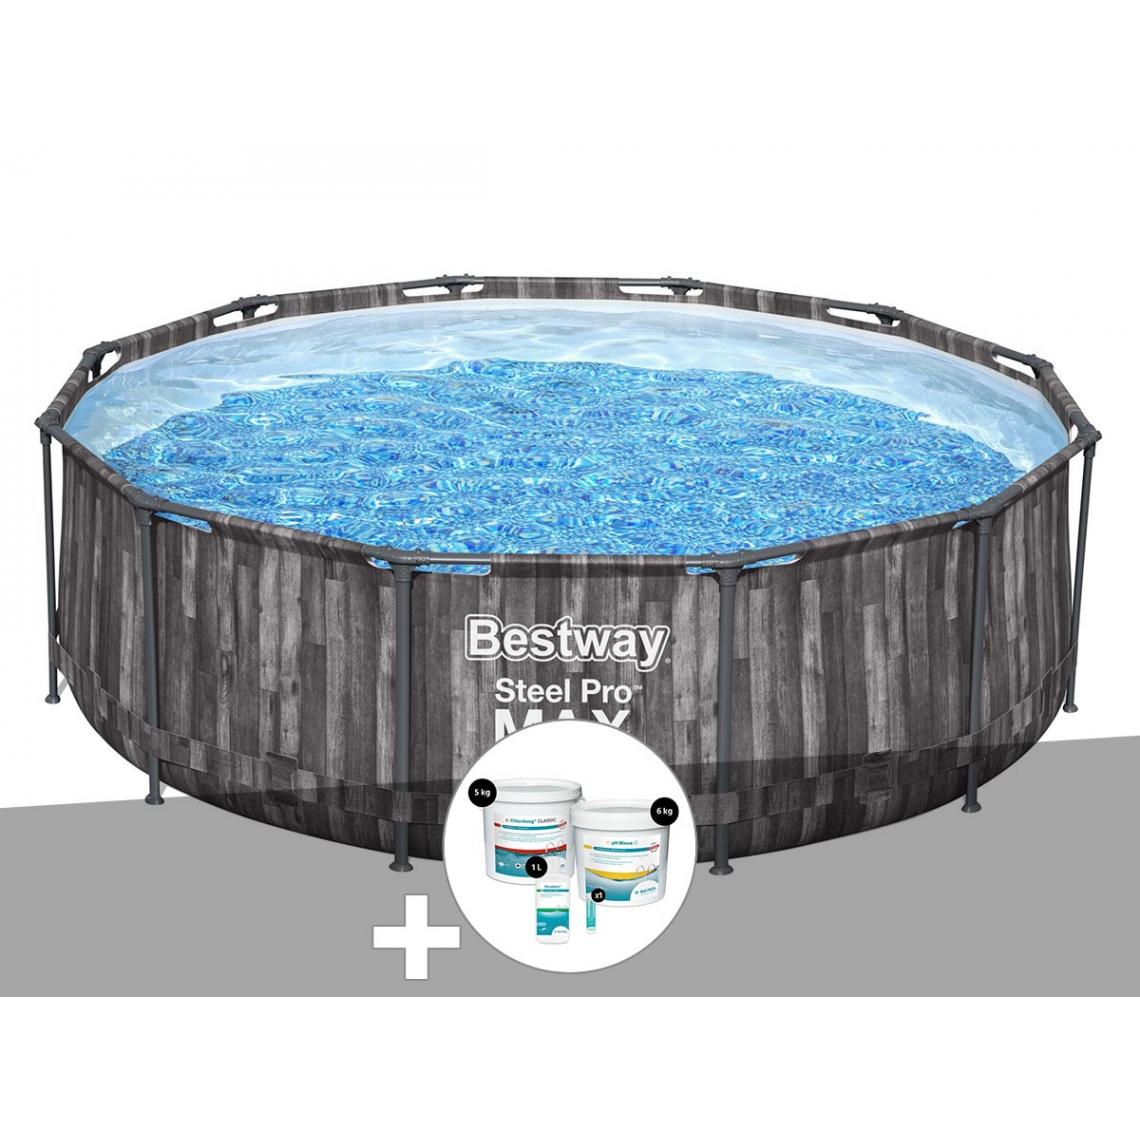 Bestway - Kit piscine tubulaire ronde Bestway Steel Pro Max décor bois 3,66 x 1,00 m + Kit de traitement au chlore - Piscine Tubulaire